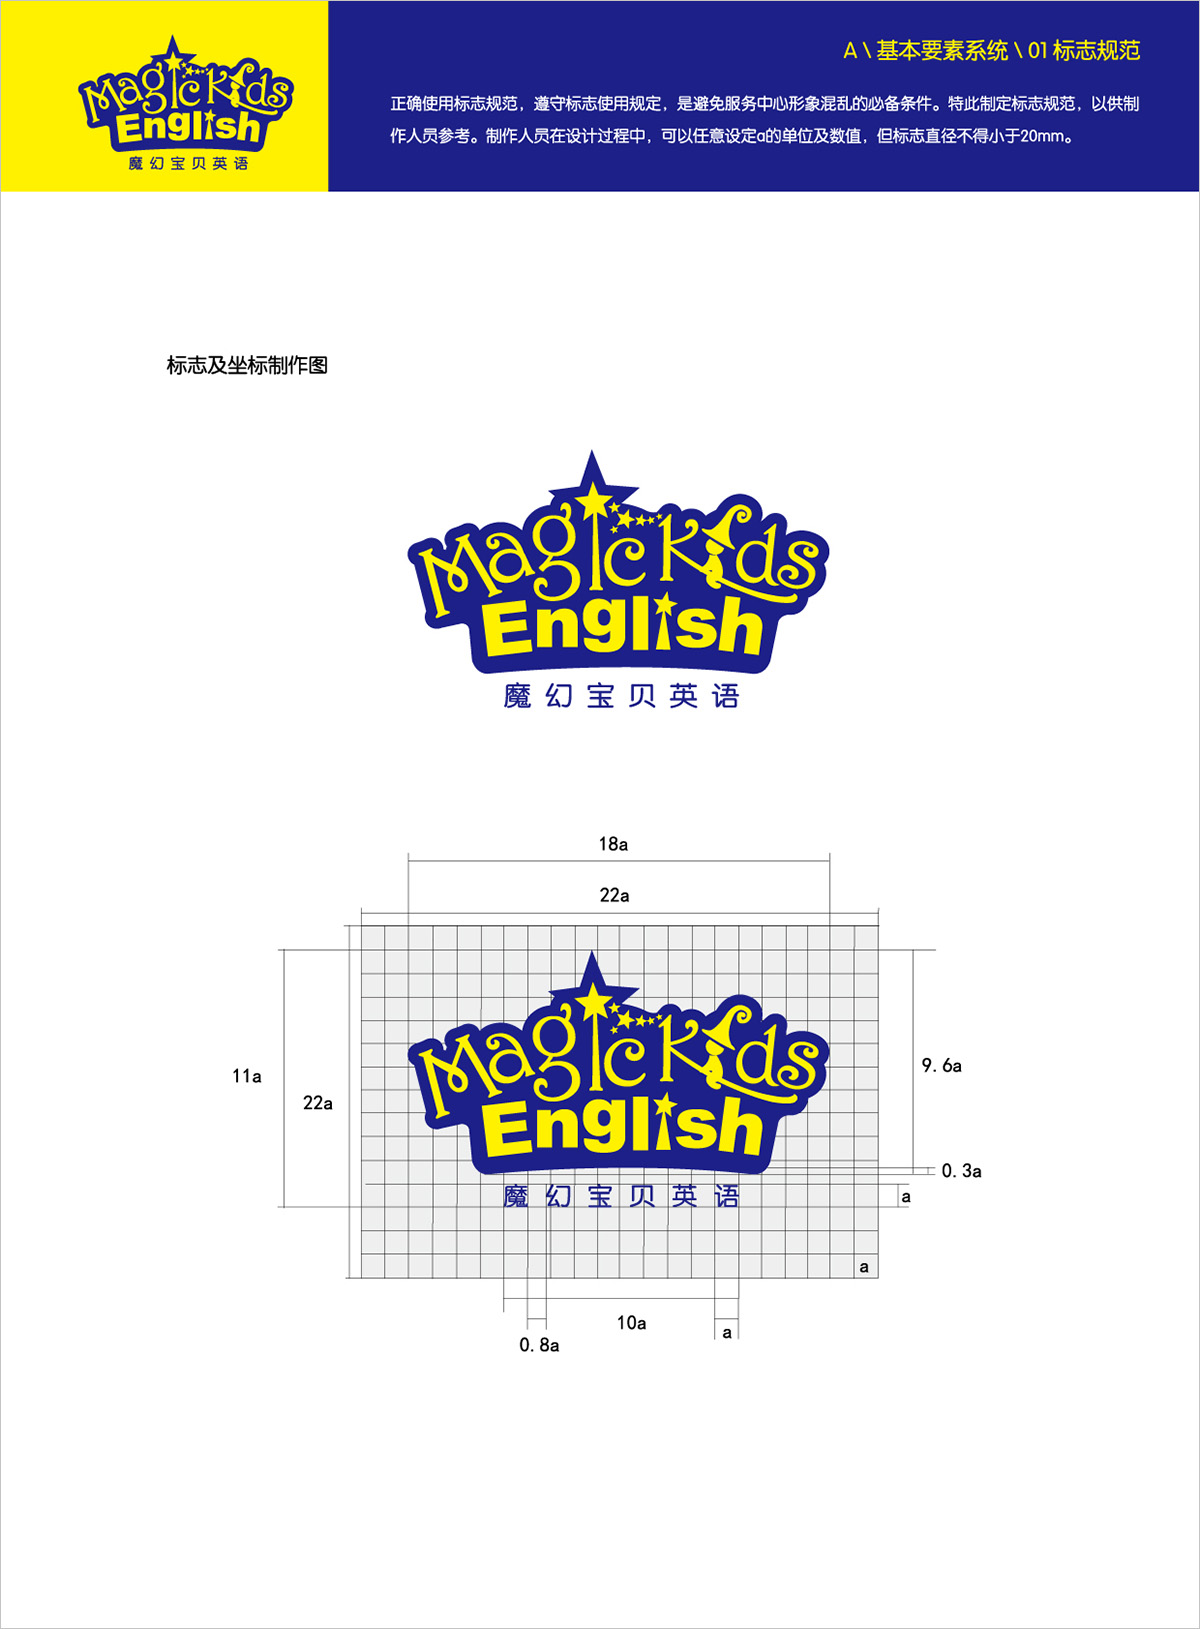 魔幻宝贝英语vi设计logo设计.jpg